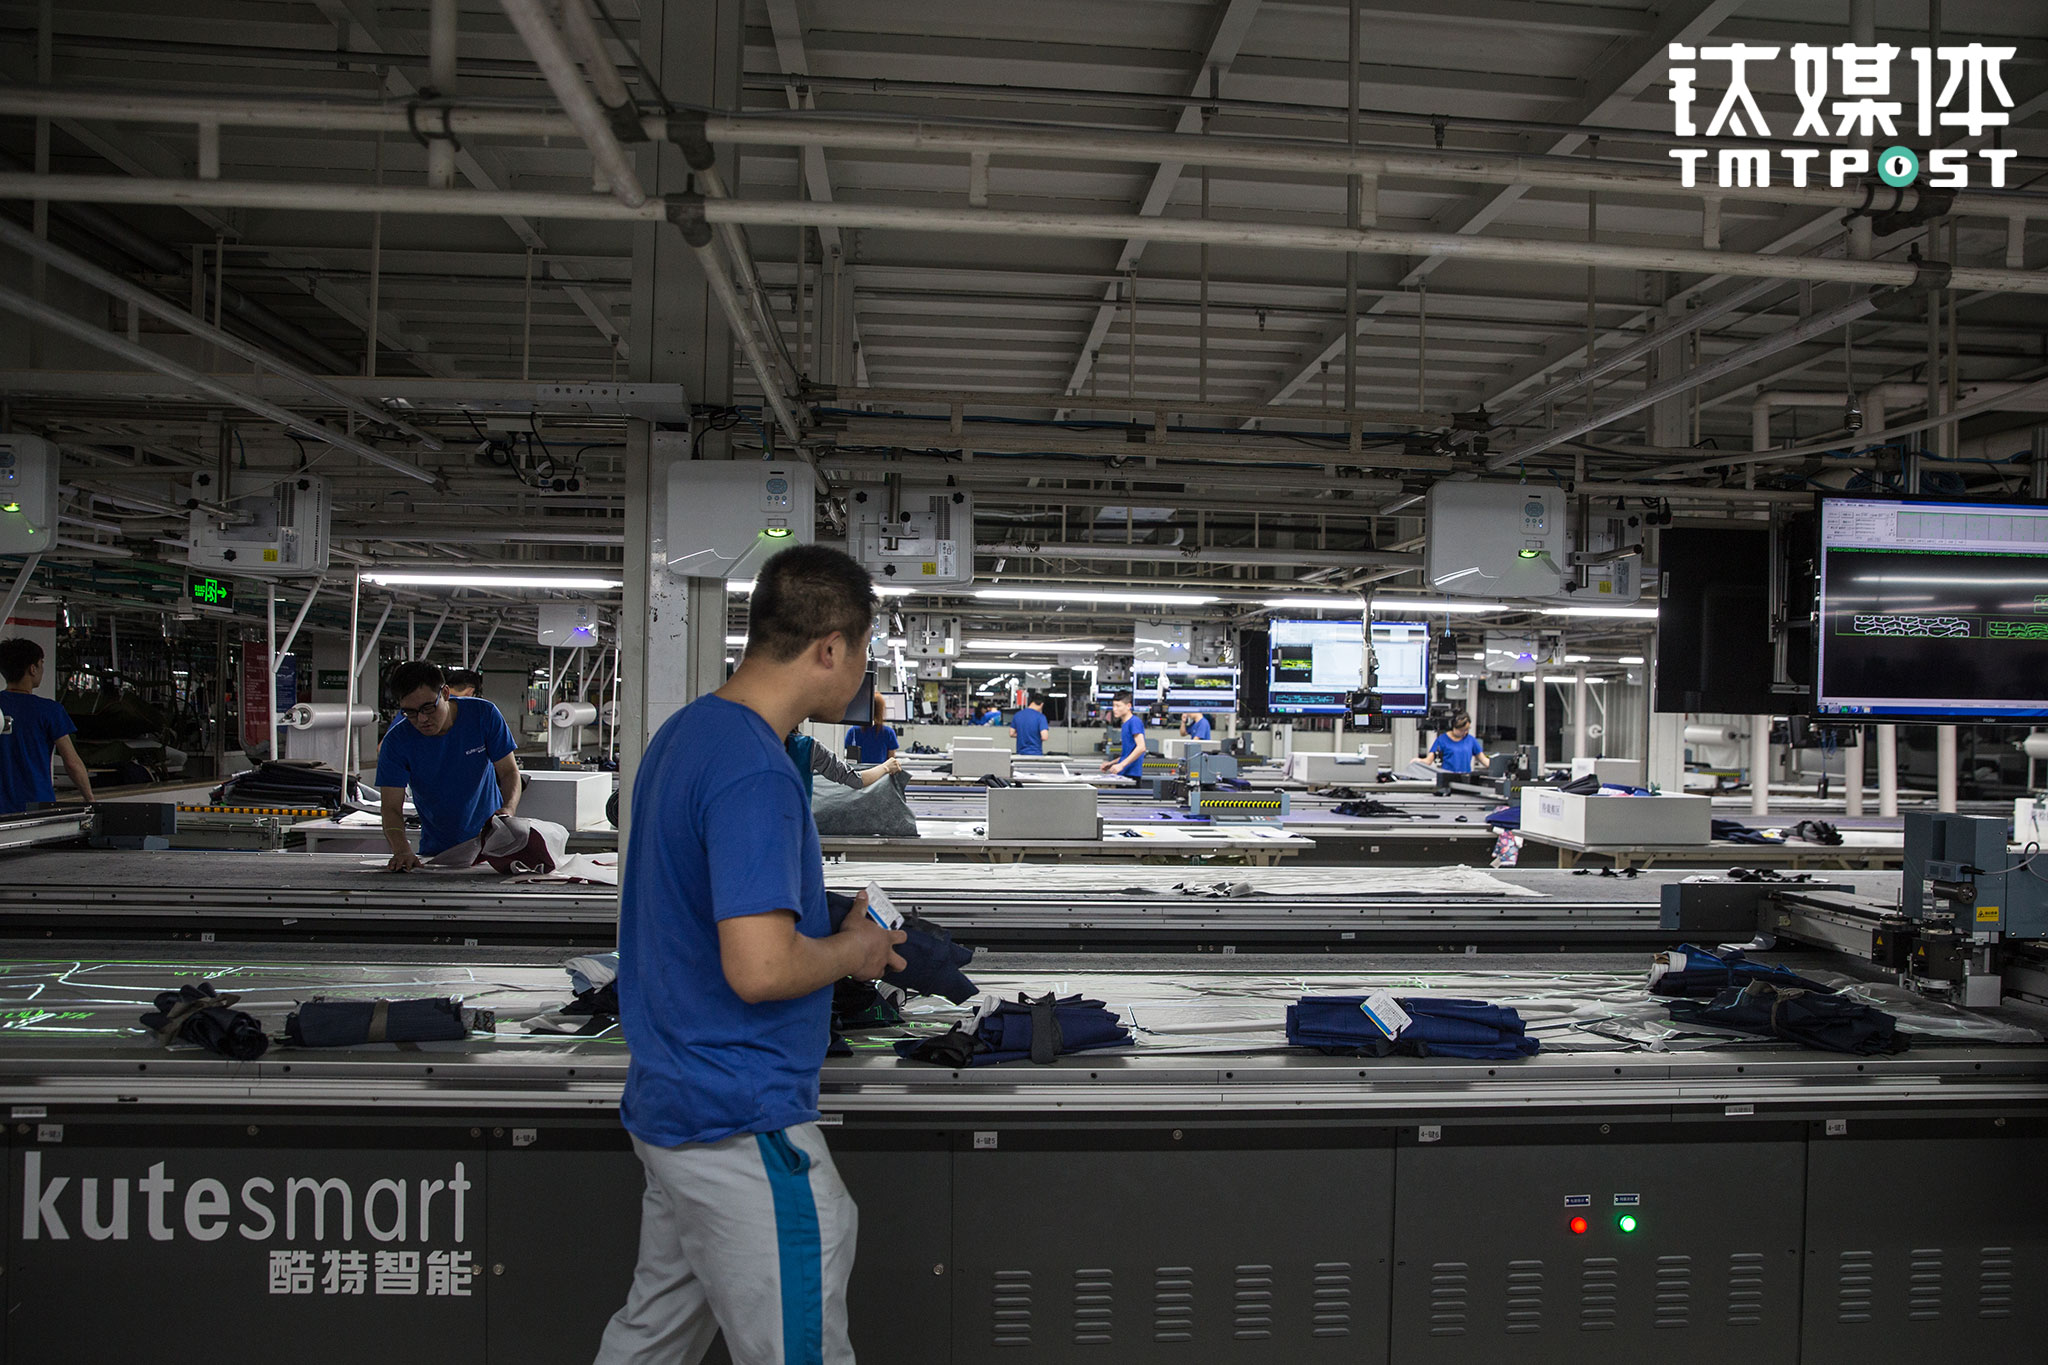 酷特服装工厂:新流水线,新工人丨钛媒体《在线》